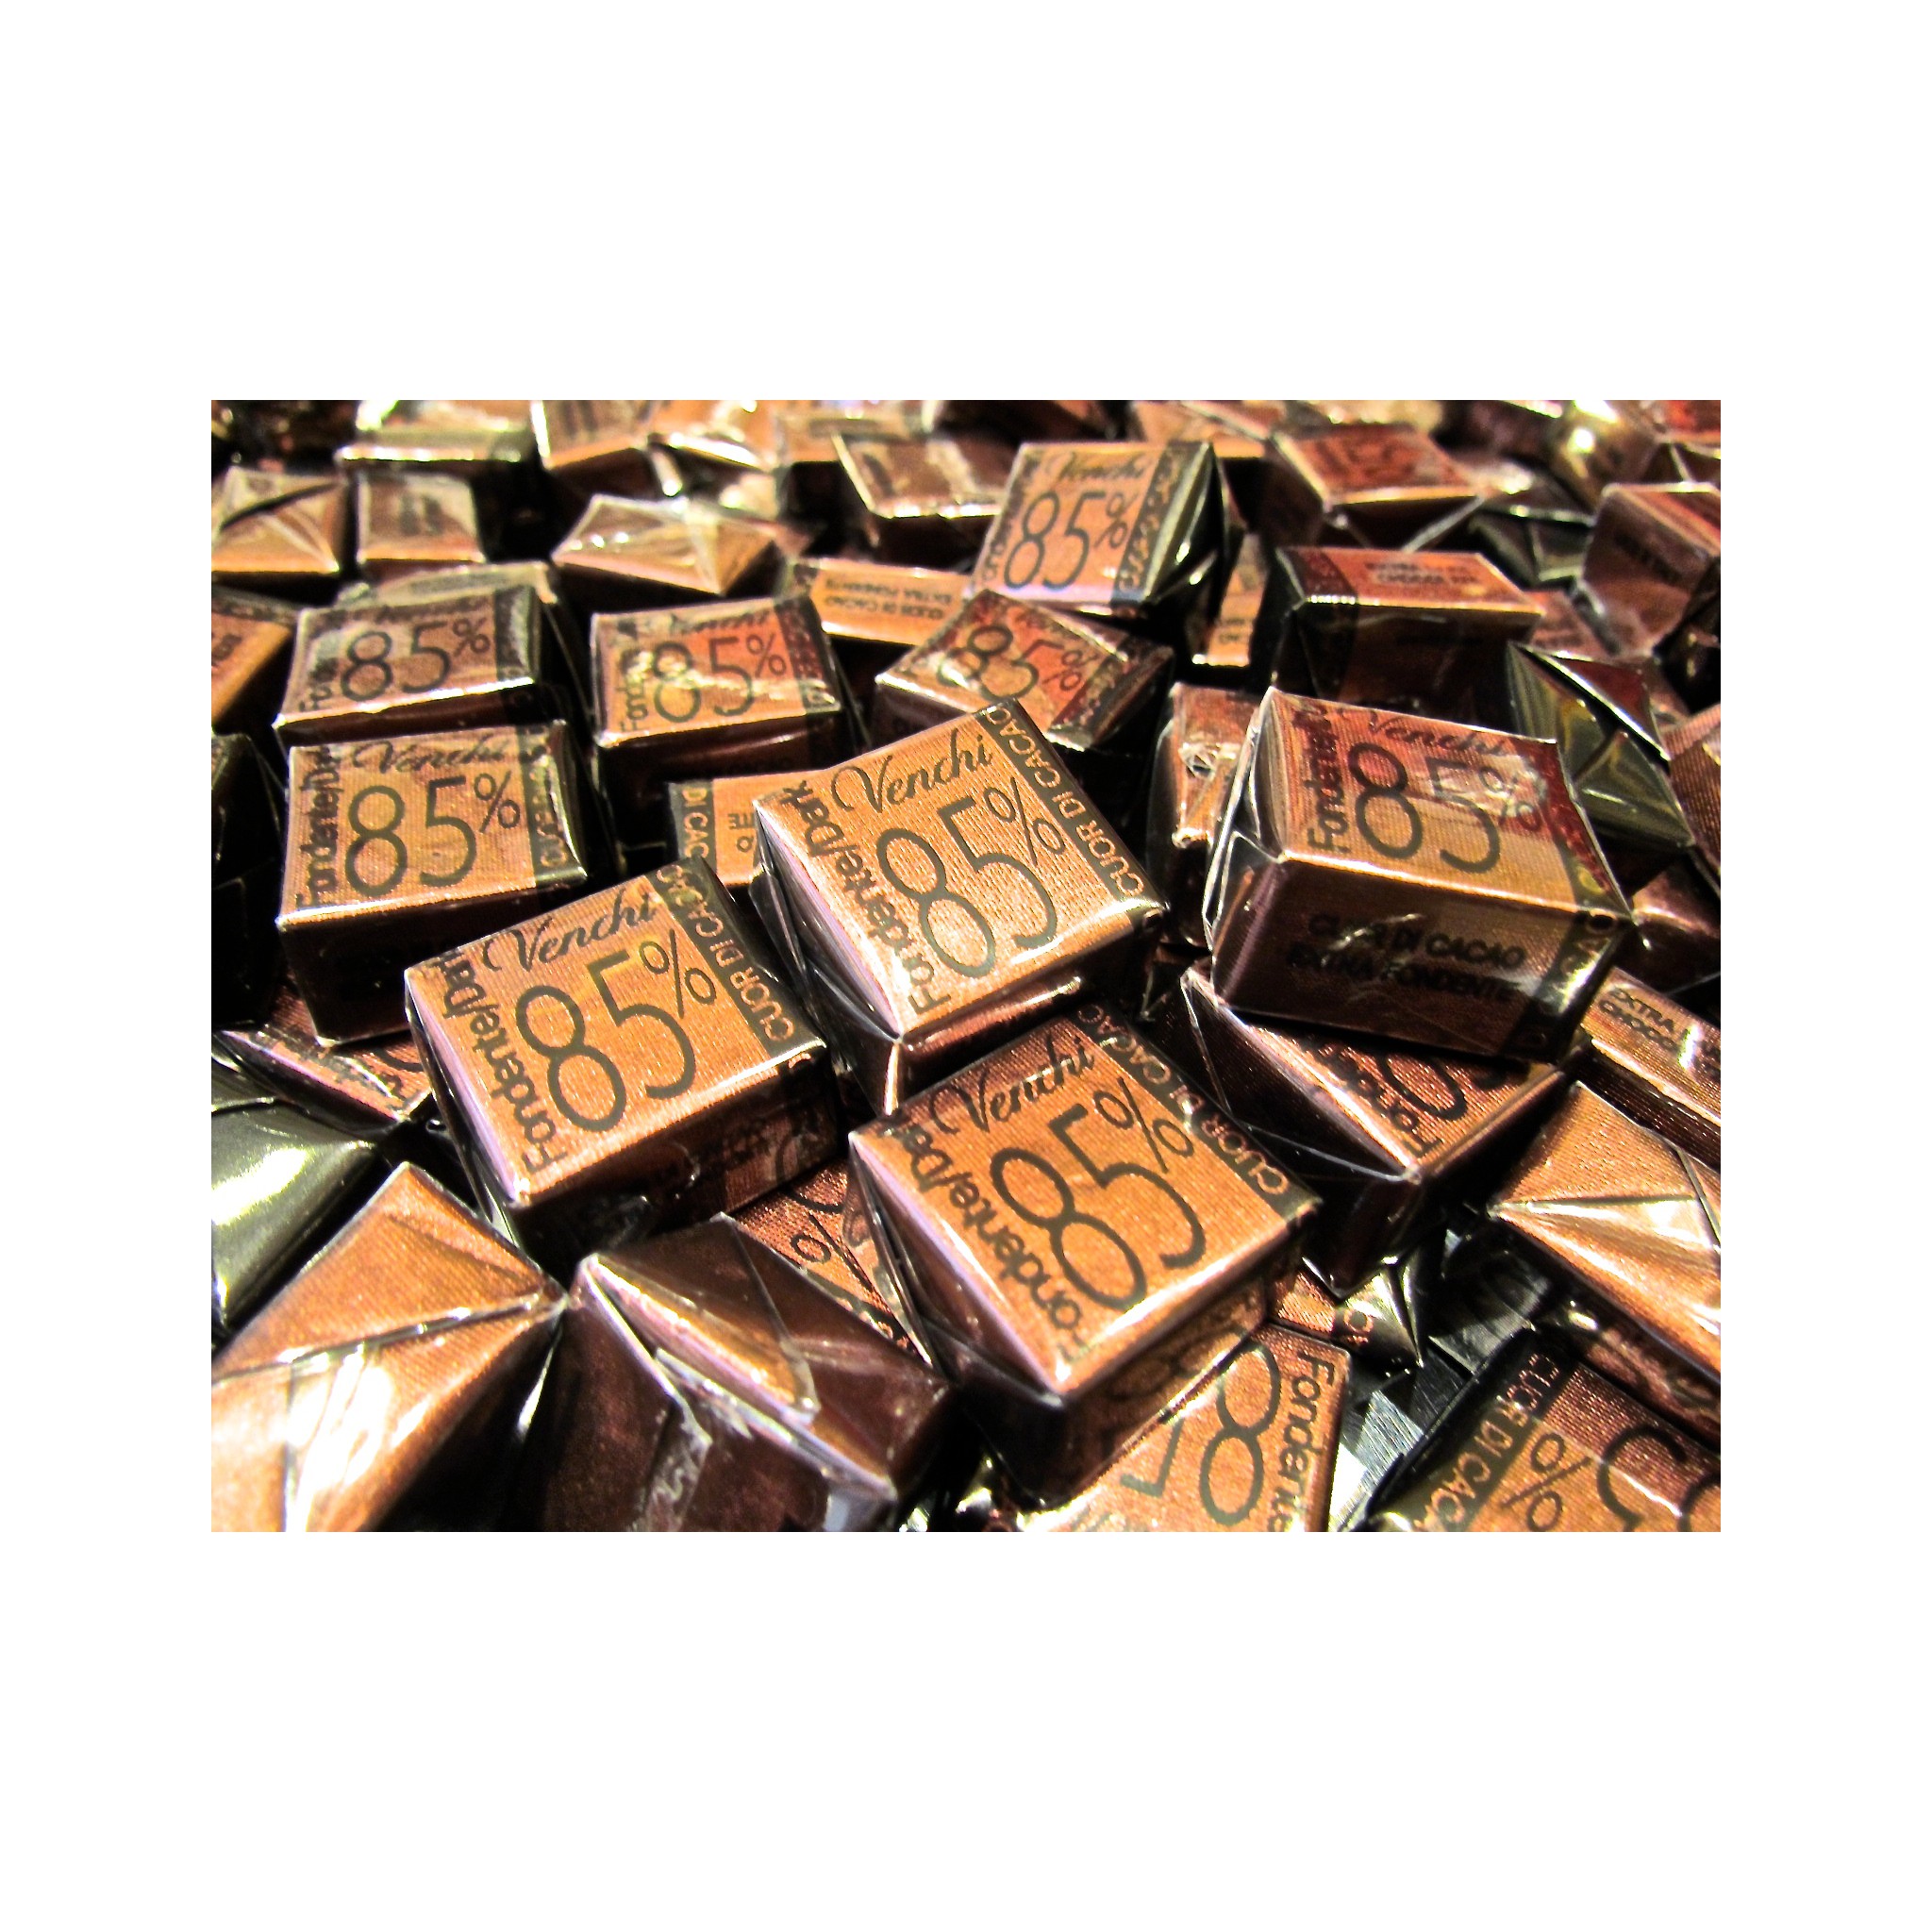 Vendita online Cioccolatini Venchi di cuneo Novità fondente 85% di cacao.  Shop on line cioccolatini Venchi Unica quadrati perfet